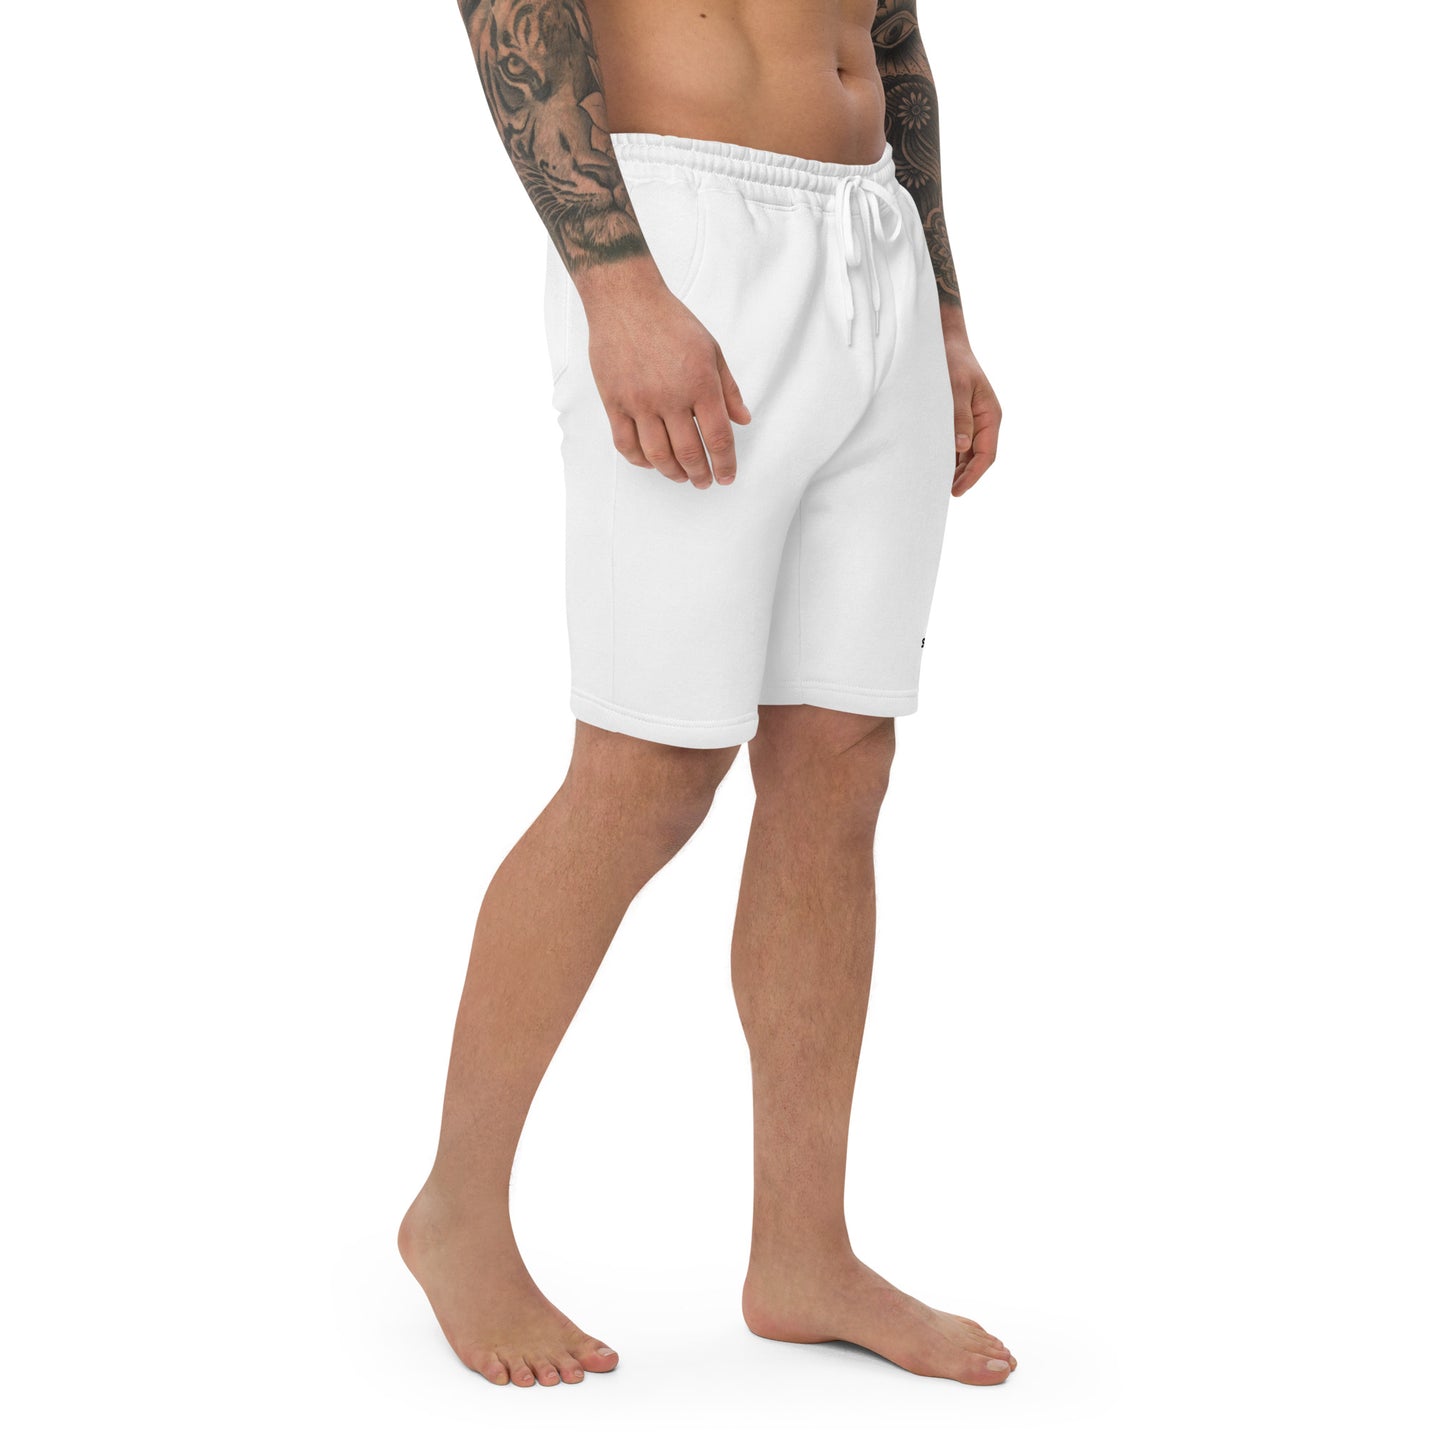 WHITE Men's Fleece Shorts